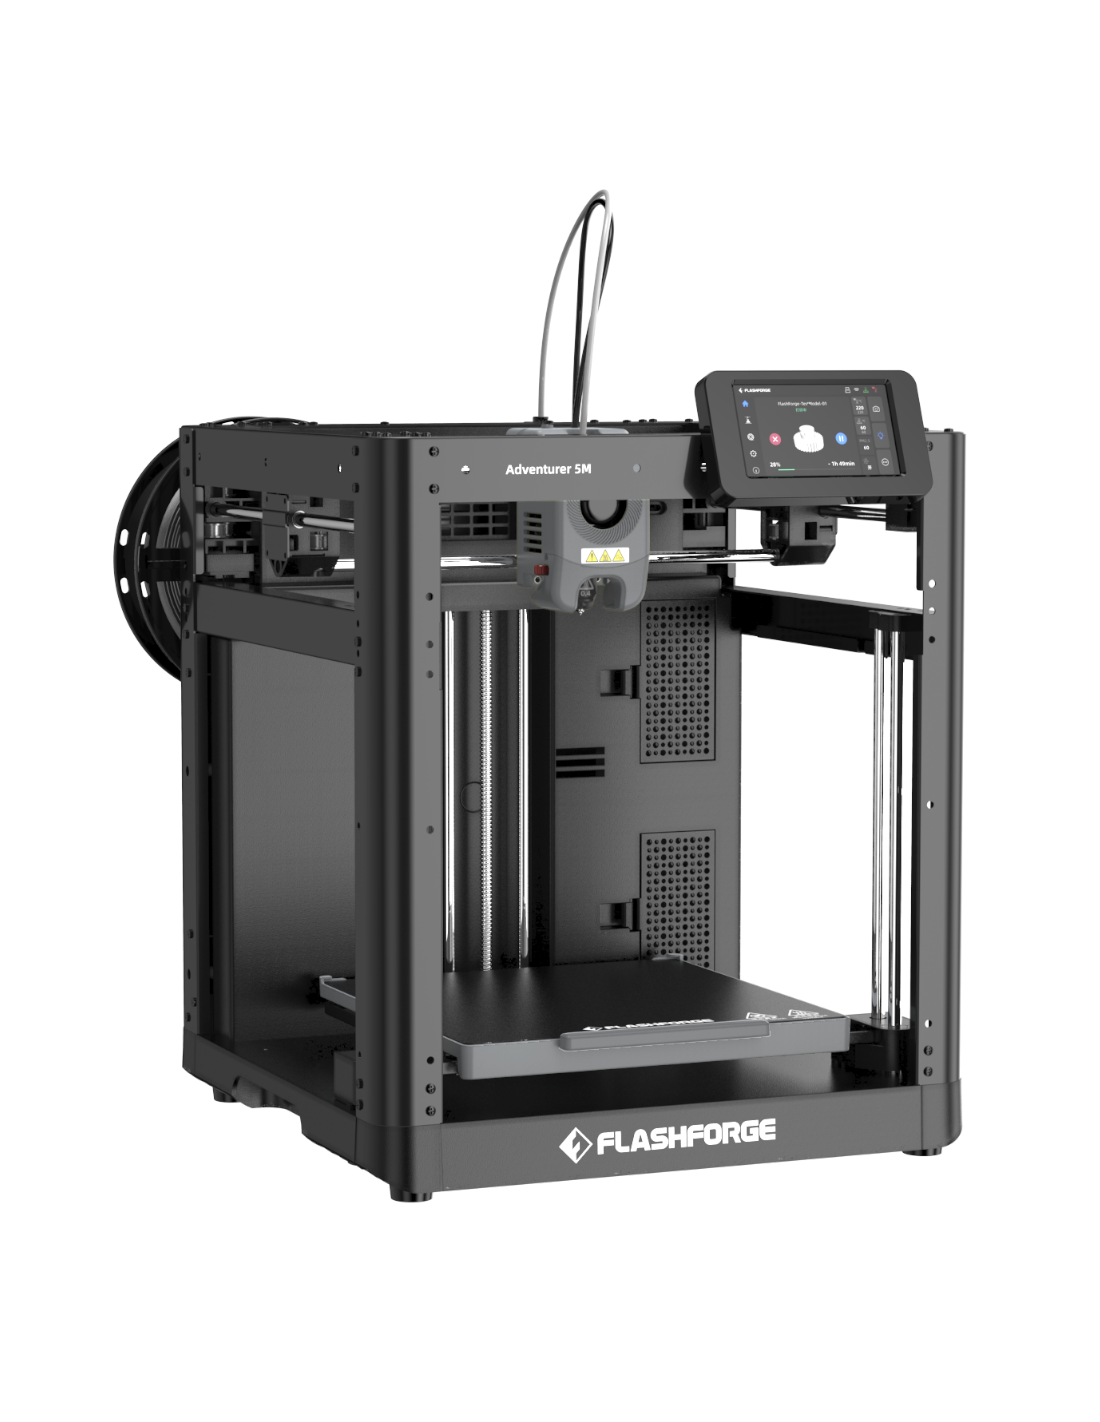 Flashforge Adventurer 5M - Imprimante 3D